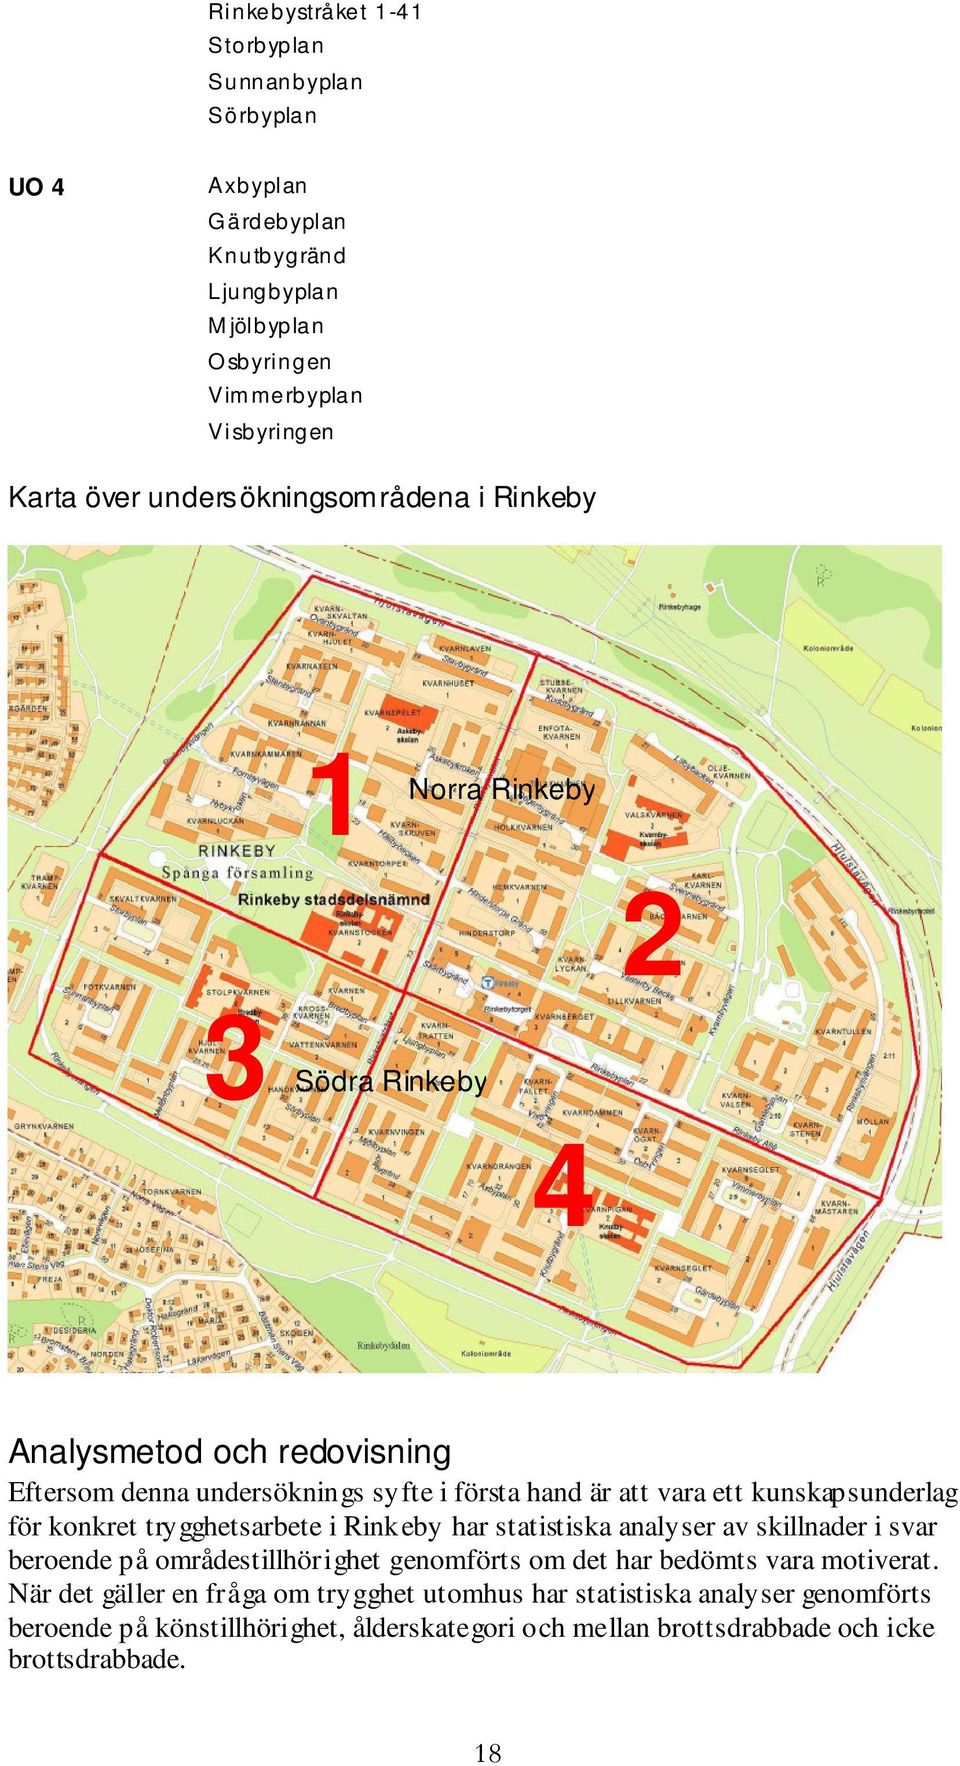 kunskapsunderlag för konkret trygghetsarbete i Rinkeby har statistiska analyser av skillnader i svar beroende på områdestillhörighet genomförts om det har bedömts vara